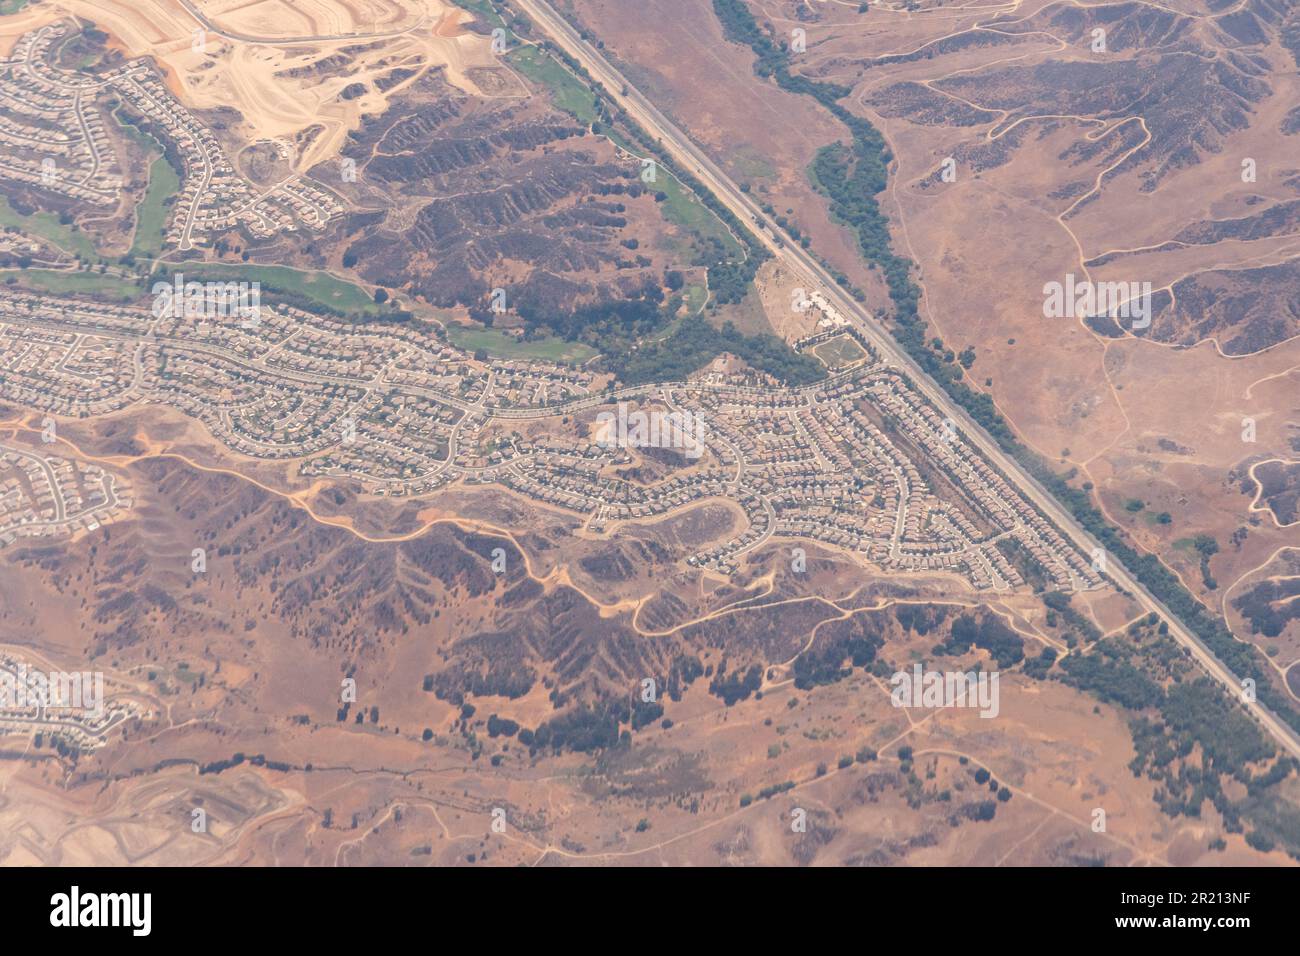 Blick aus der Vogelperspektive auf eingezäunte Gemeinden, Bauvorhaben, Autobahnen und Unterteilungen in der Wüste außerhalb von Los Angeles in Südkalifornien Stockfoto